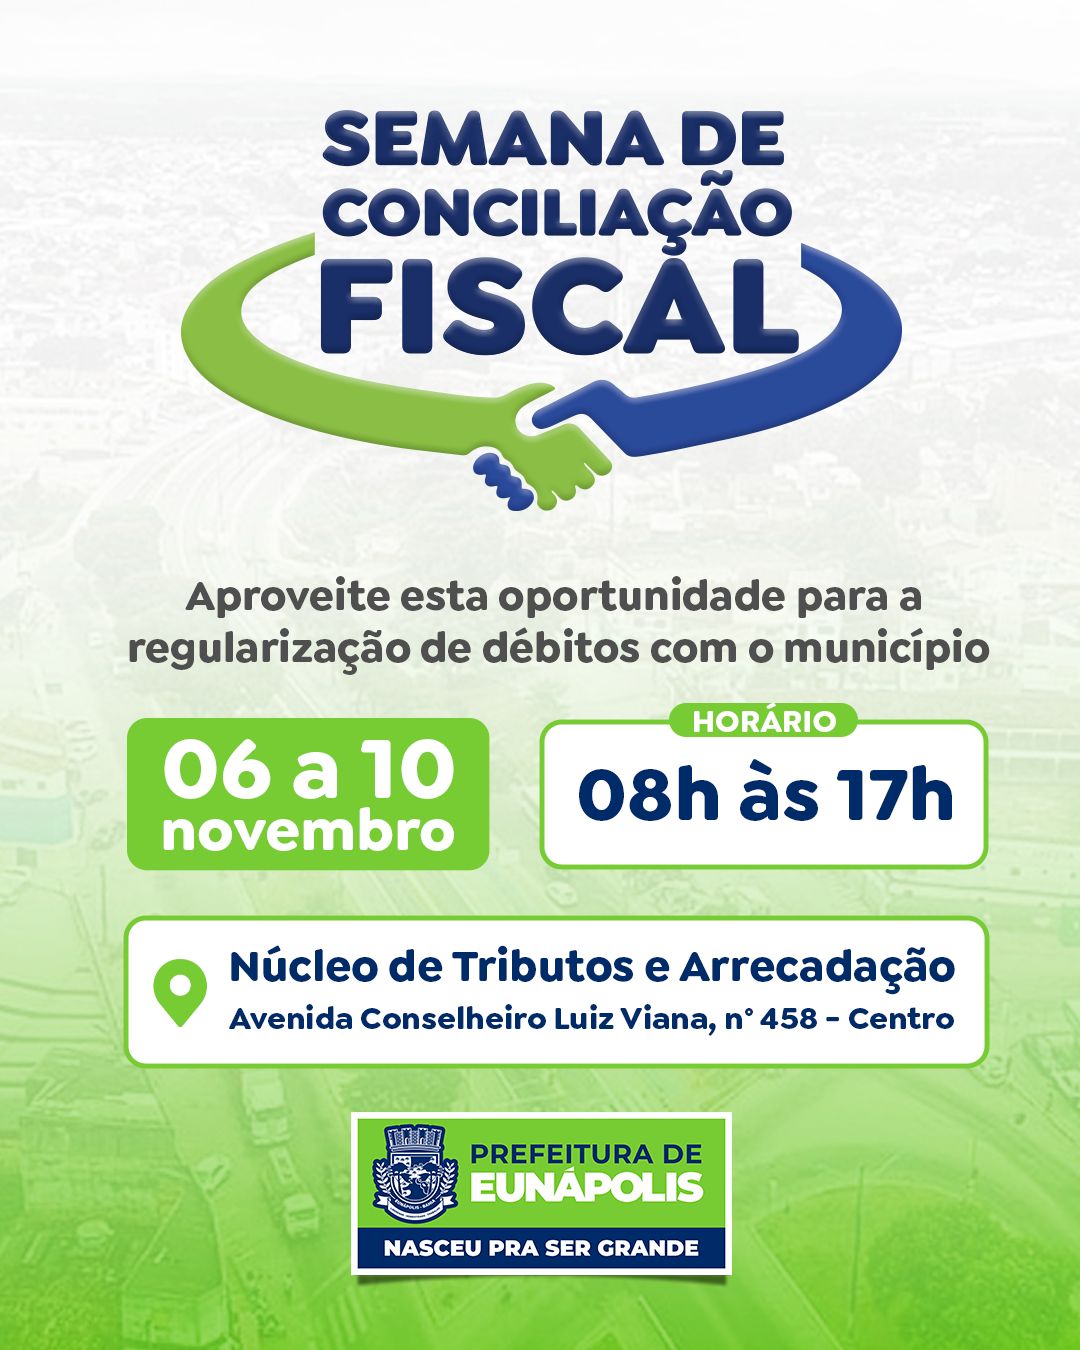 Semana Municipal de Conciliação Fiscal permite a inadimplentes regularização de débitos municipais de 06 a 10 de novembro em Eunápolis 2